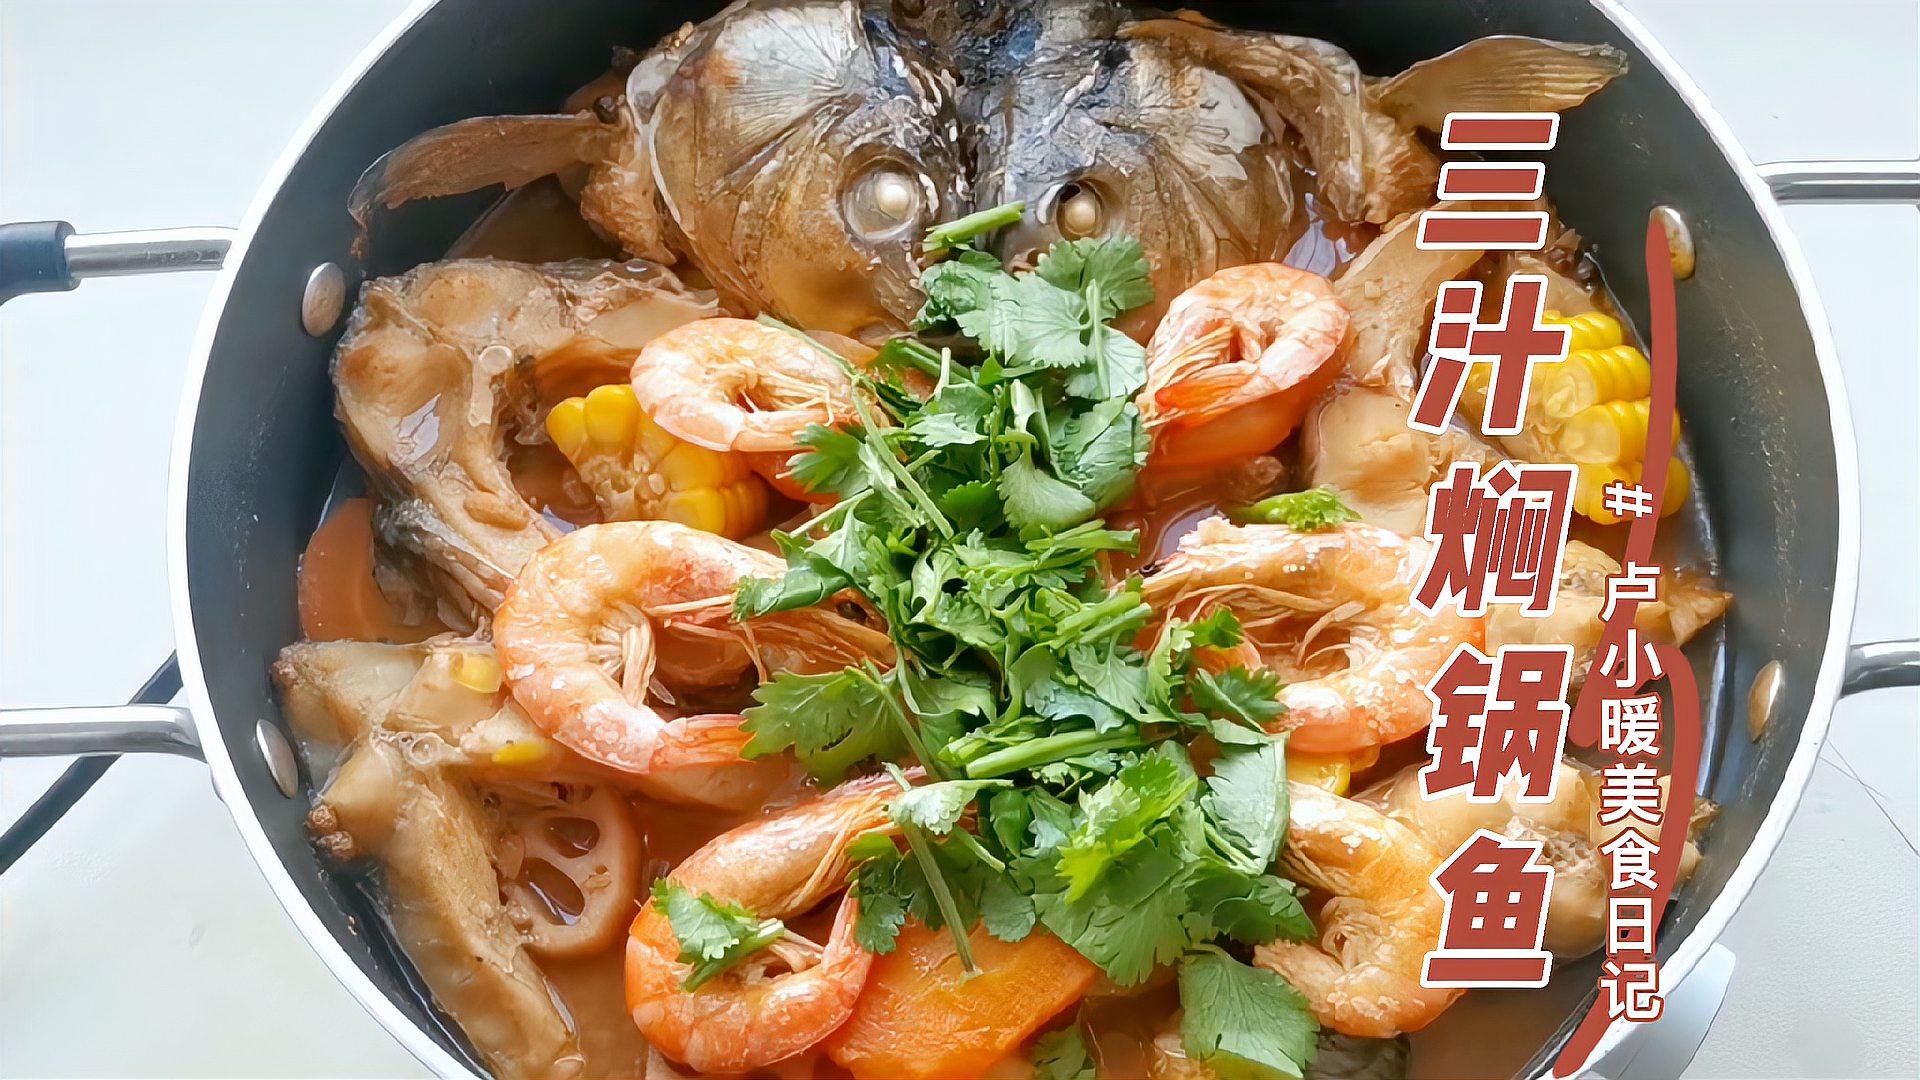 家里来客人,做这道三汁焖锅鱼,鲜嫩好吃,做法还简单